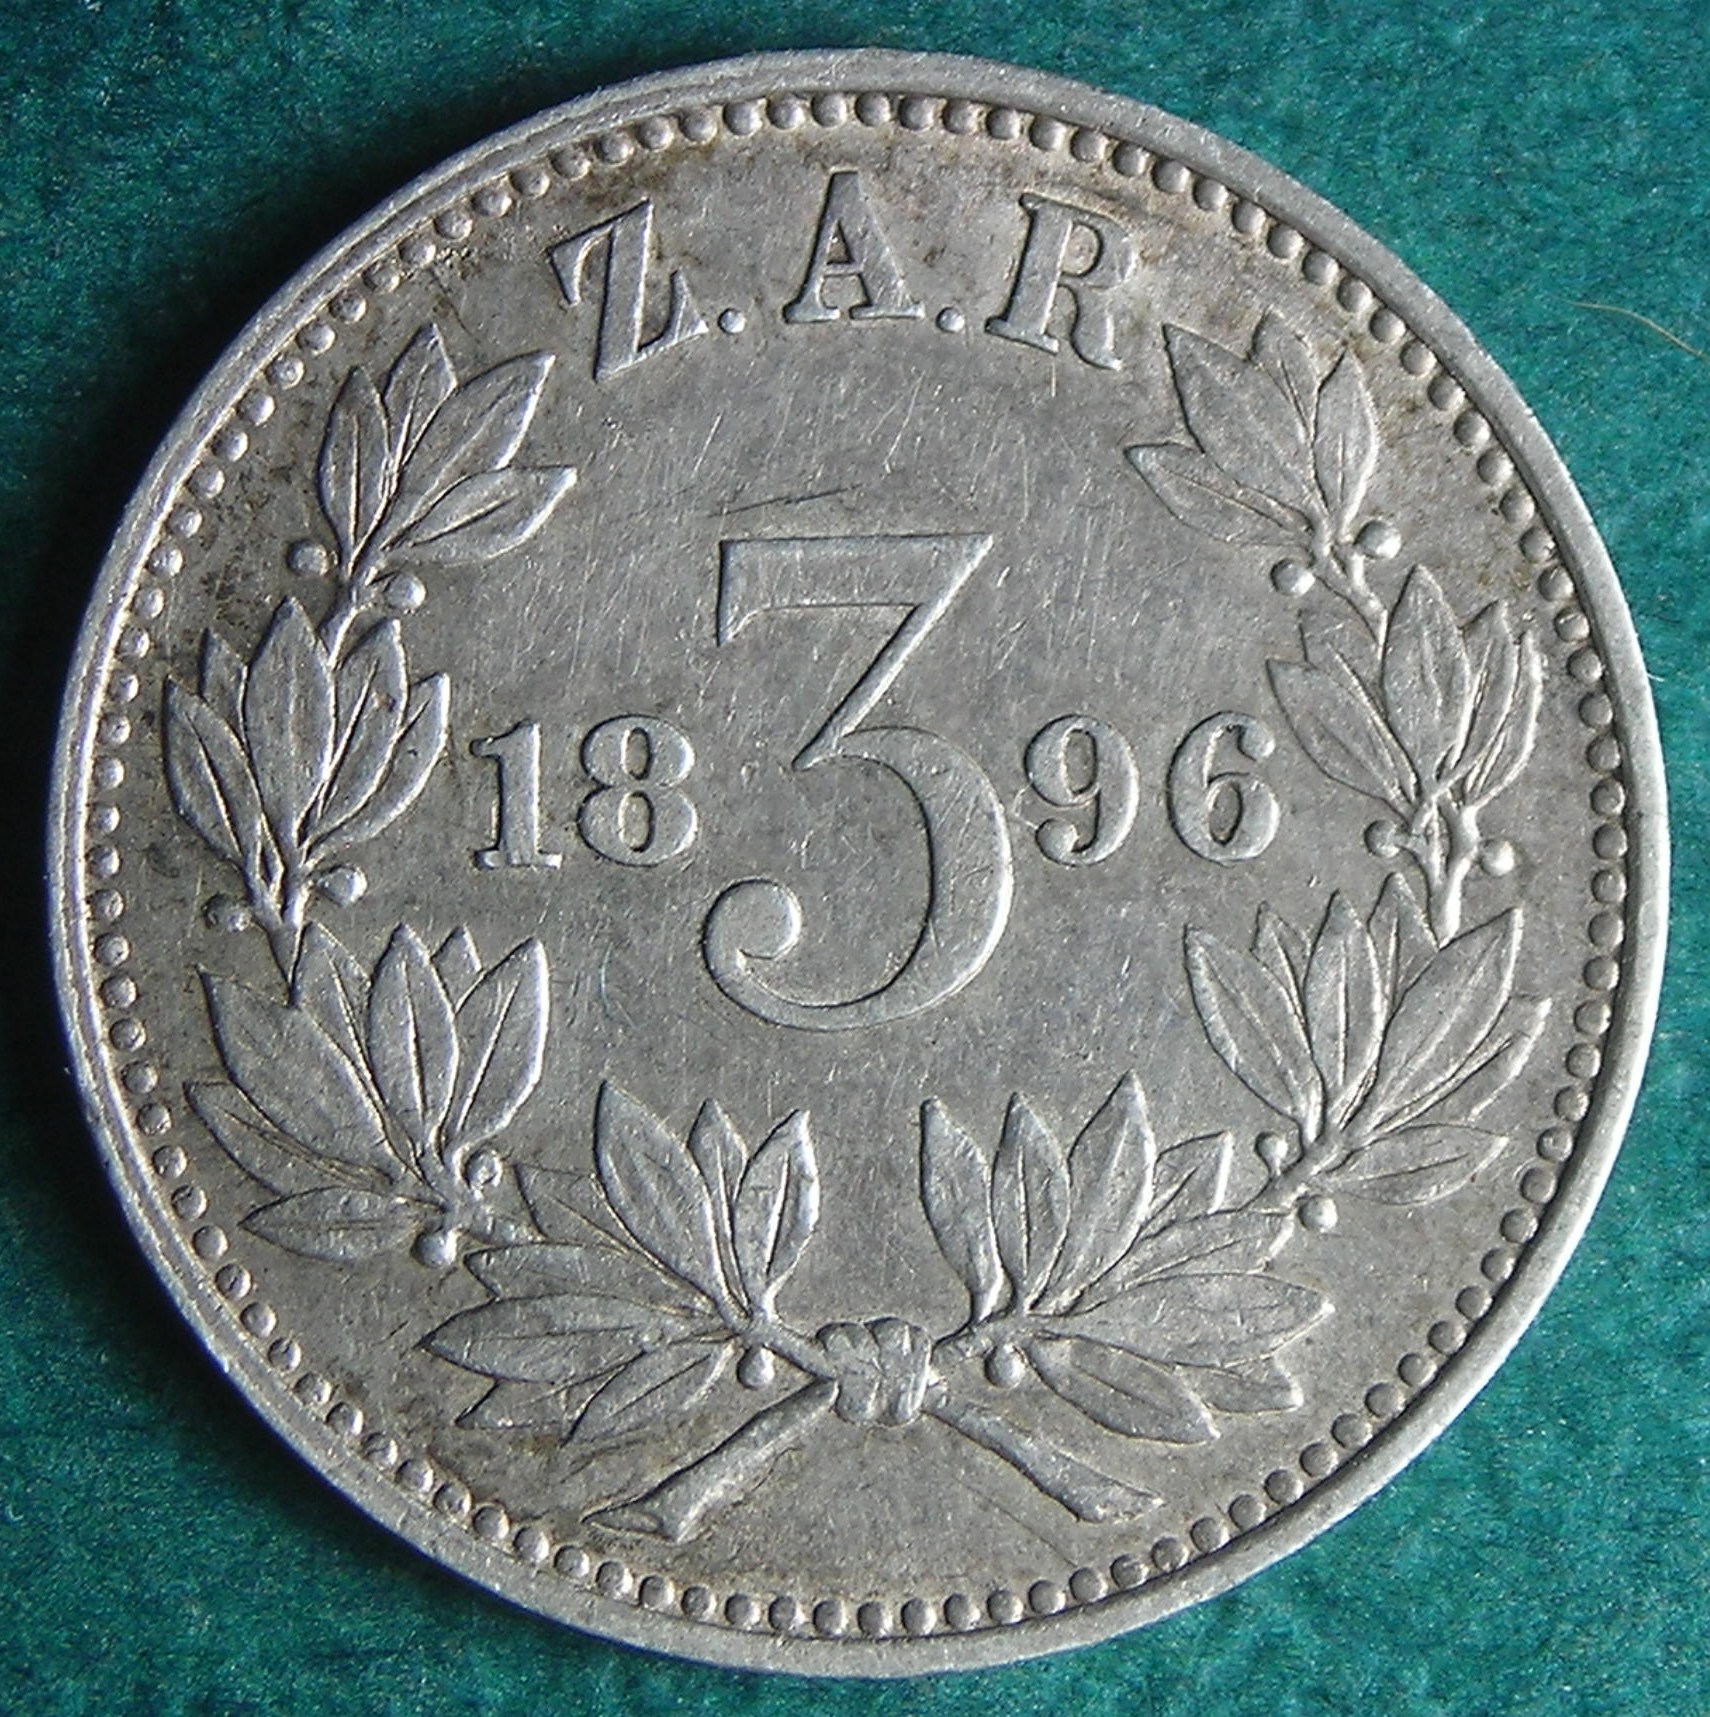 1896 ZAR 3 p rev.JPG